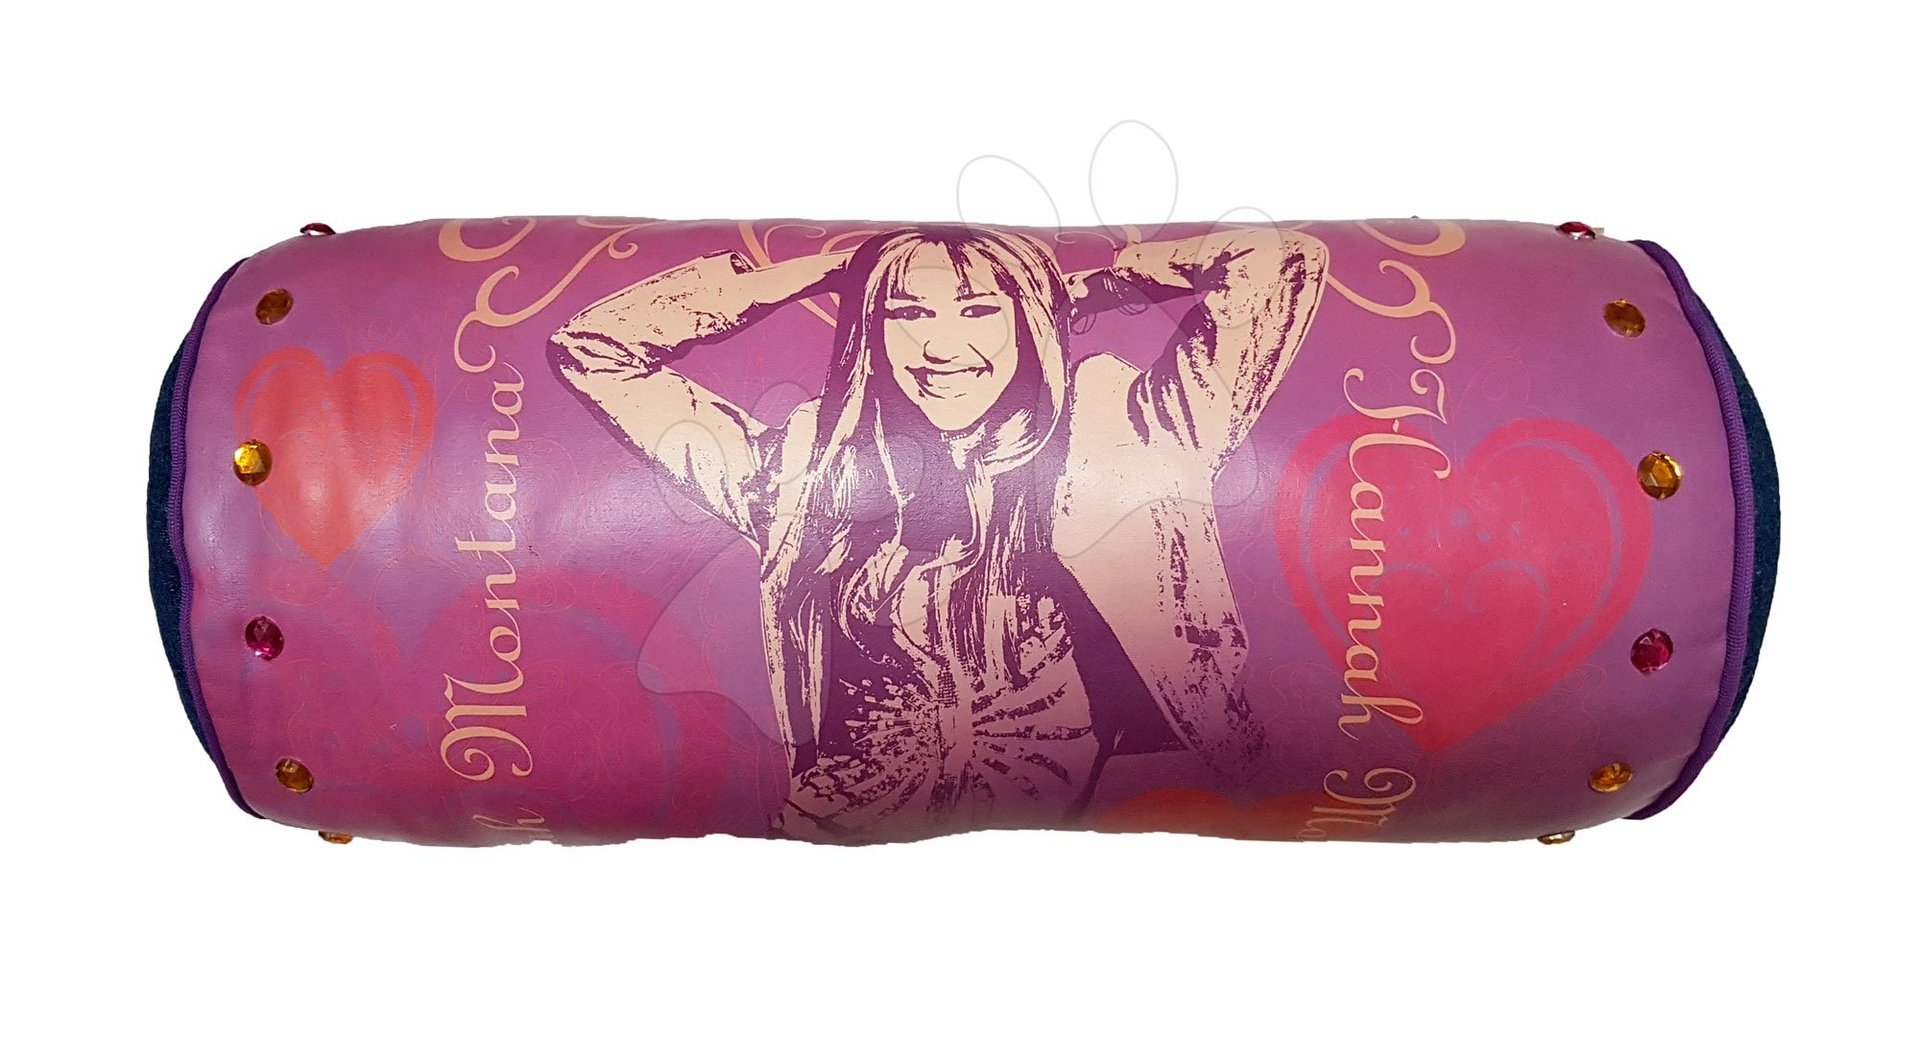 Plyšové polštáře - Hannah Montana polštář Ilanit 46 cm fialový